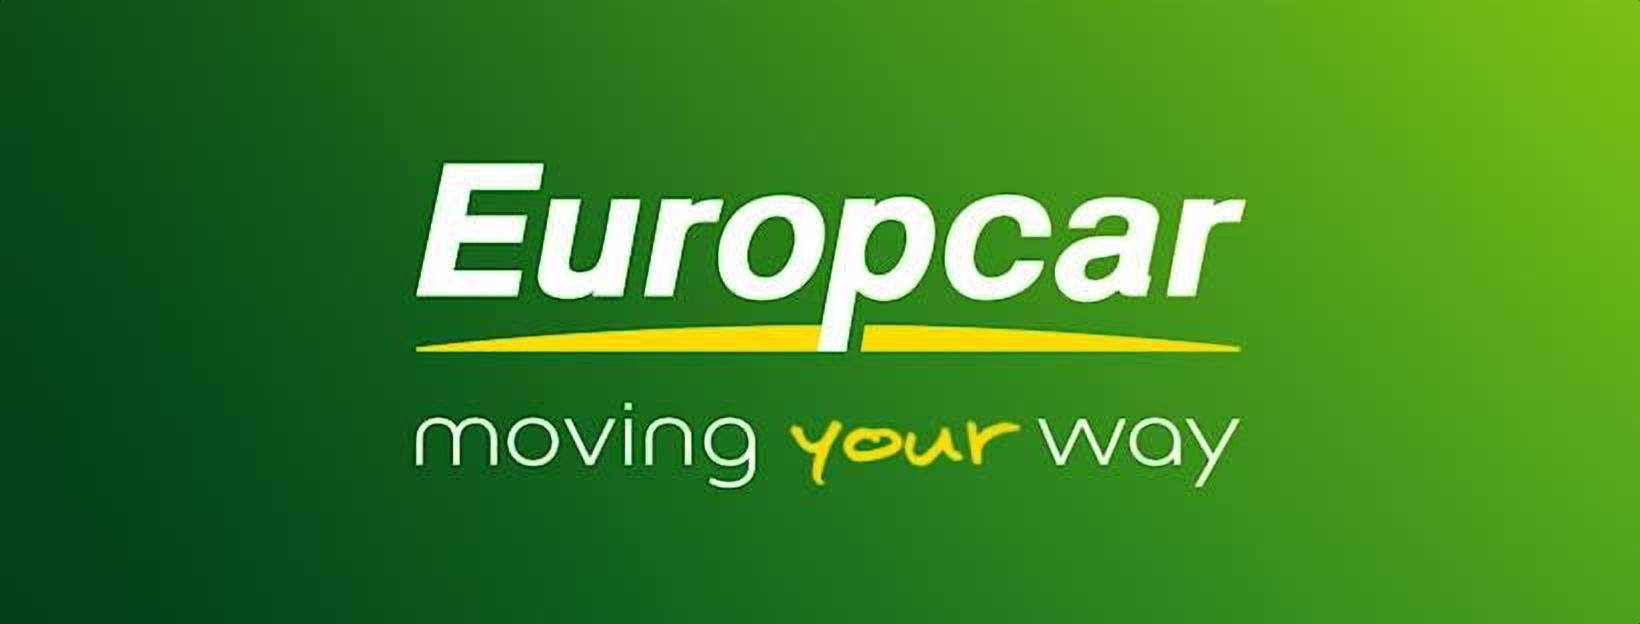 Europcar Lyon